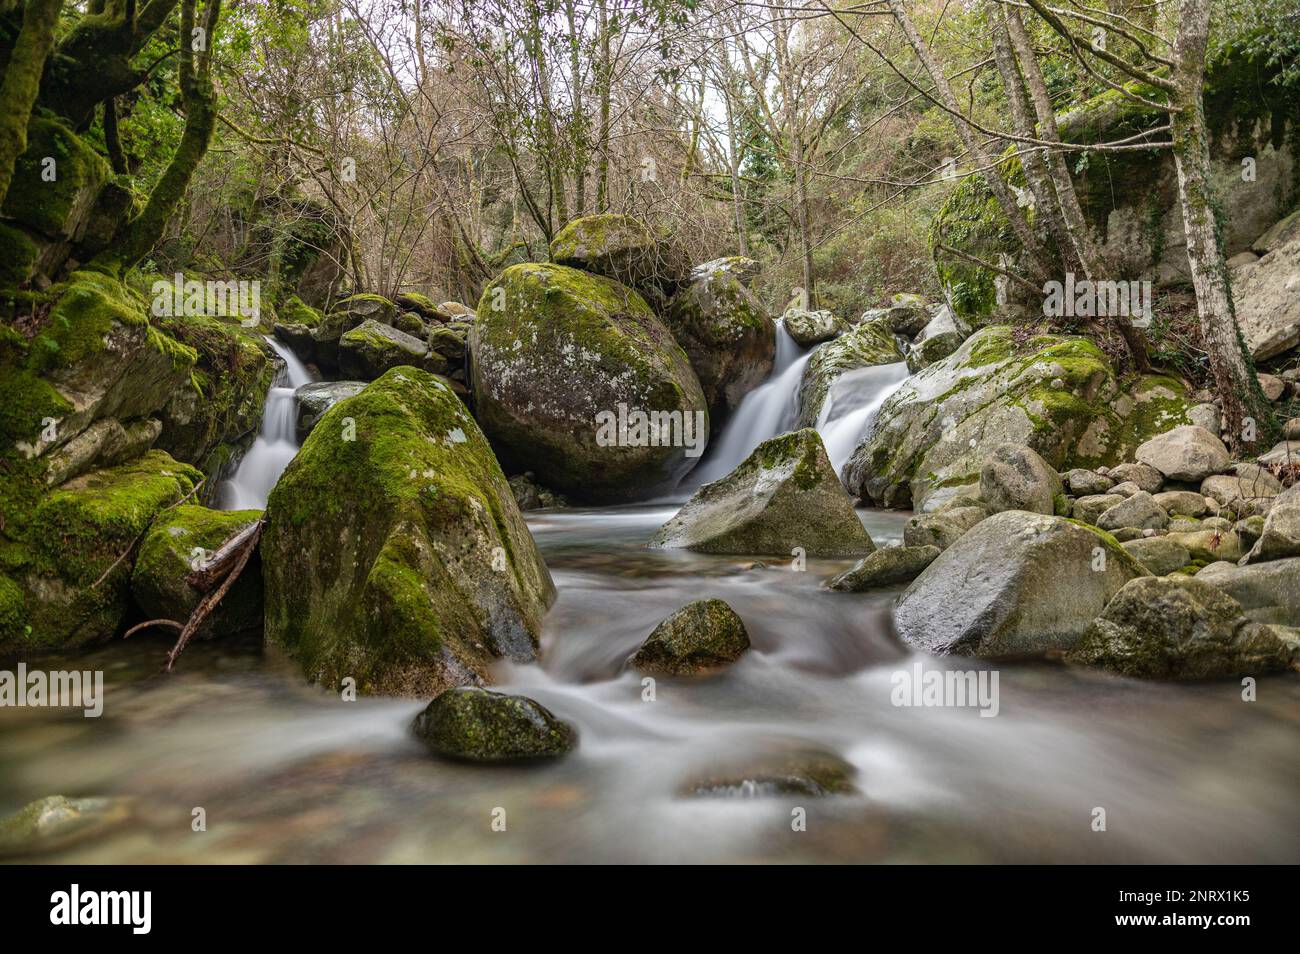 Rochers, rivière et chutes d'eau dans un décor vert de sous-bois Stock Photo